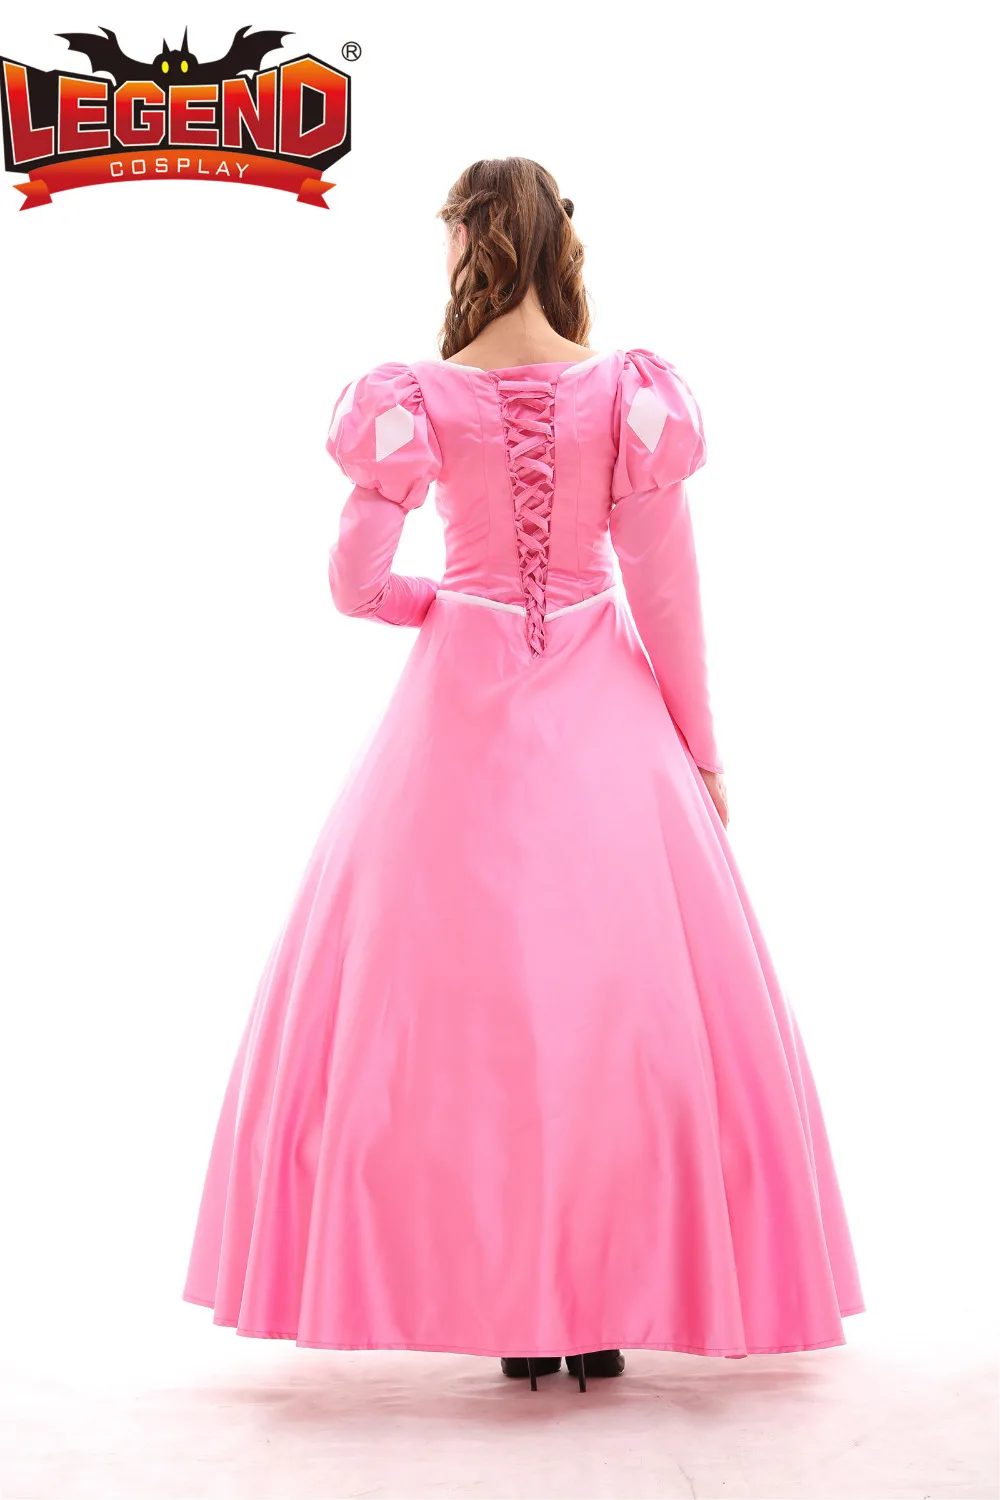 Розовый Ариэль Princesss платье костюм для взрослых Русалочка Ариэль платье на Хэллоуин Карнавальный Косплэй костюм